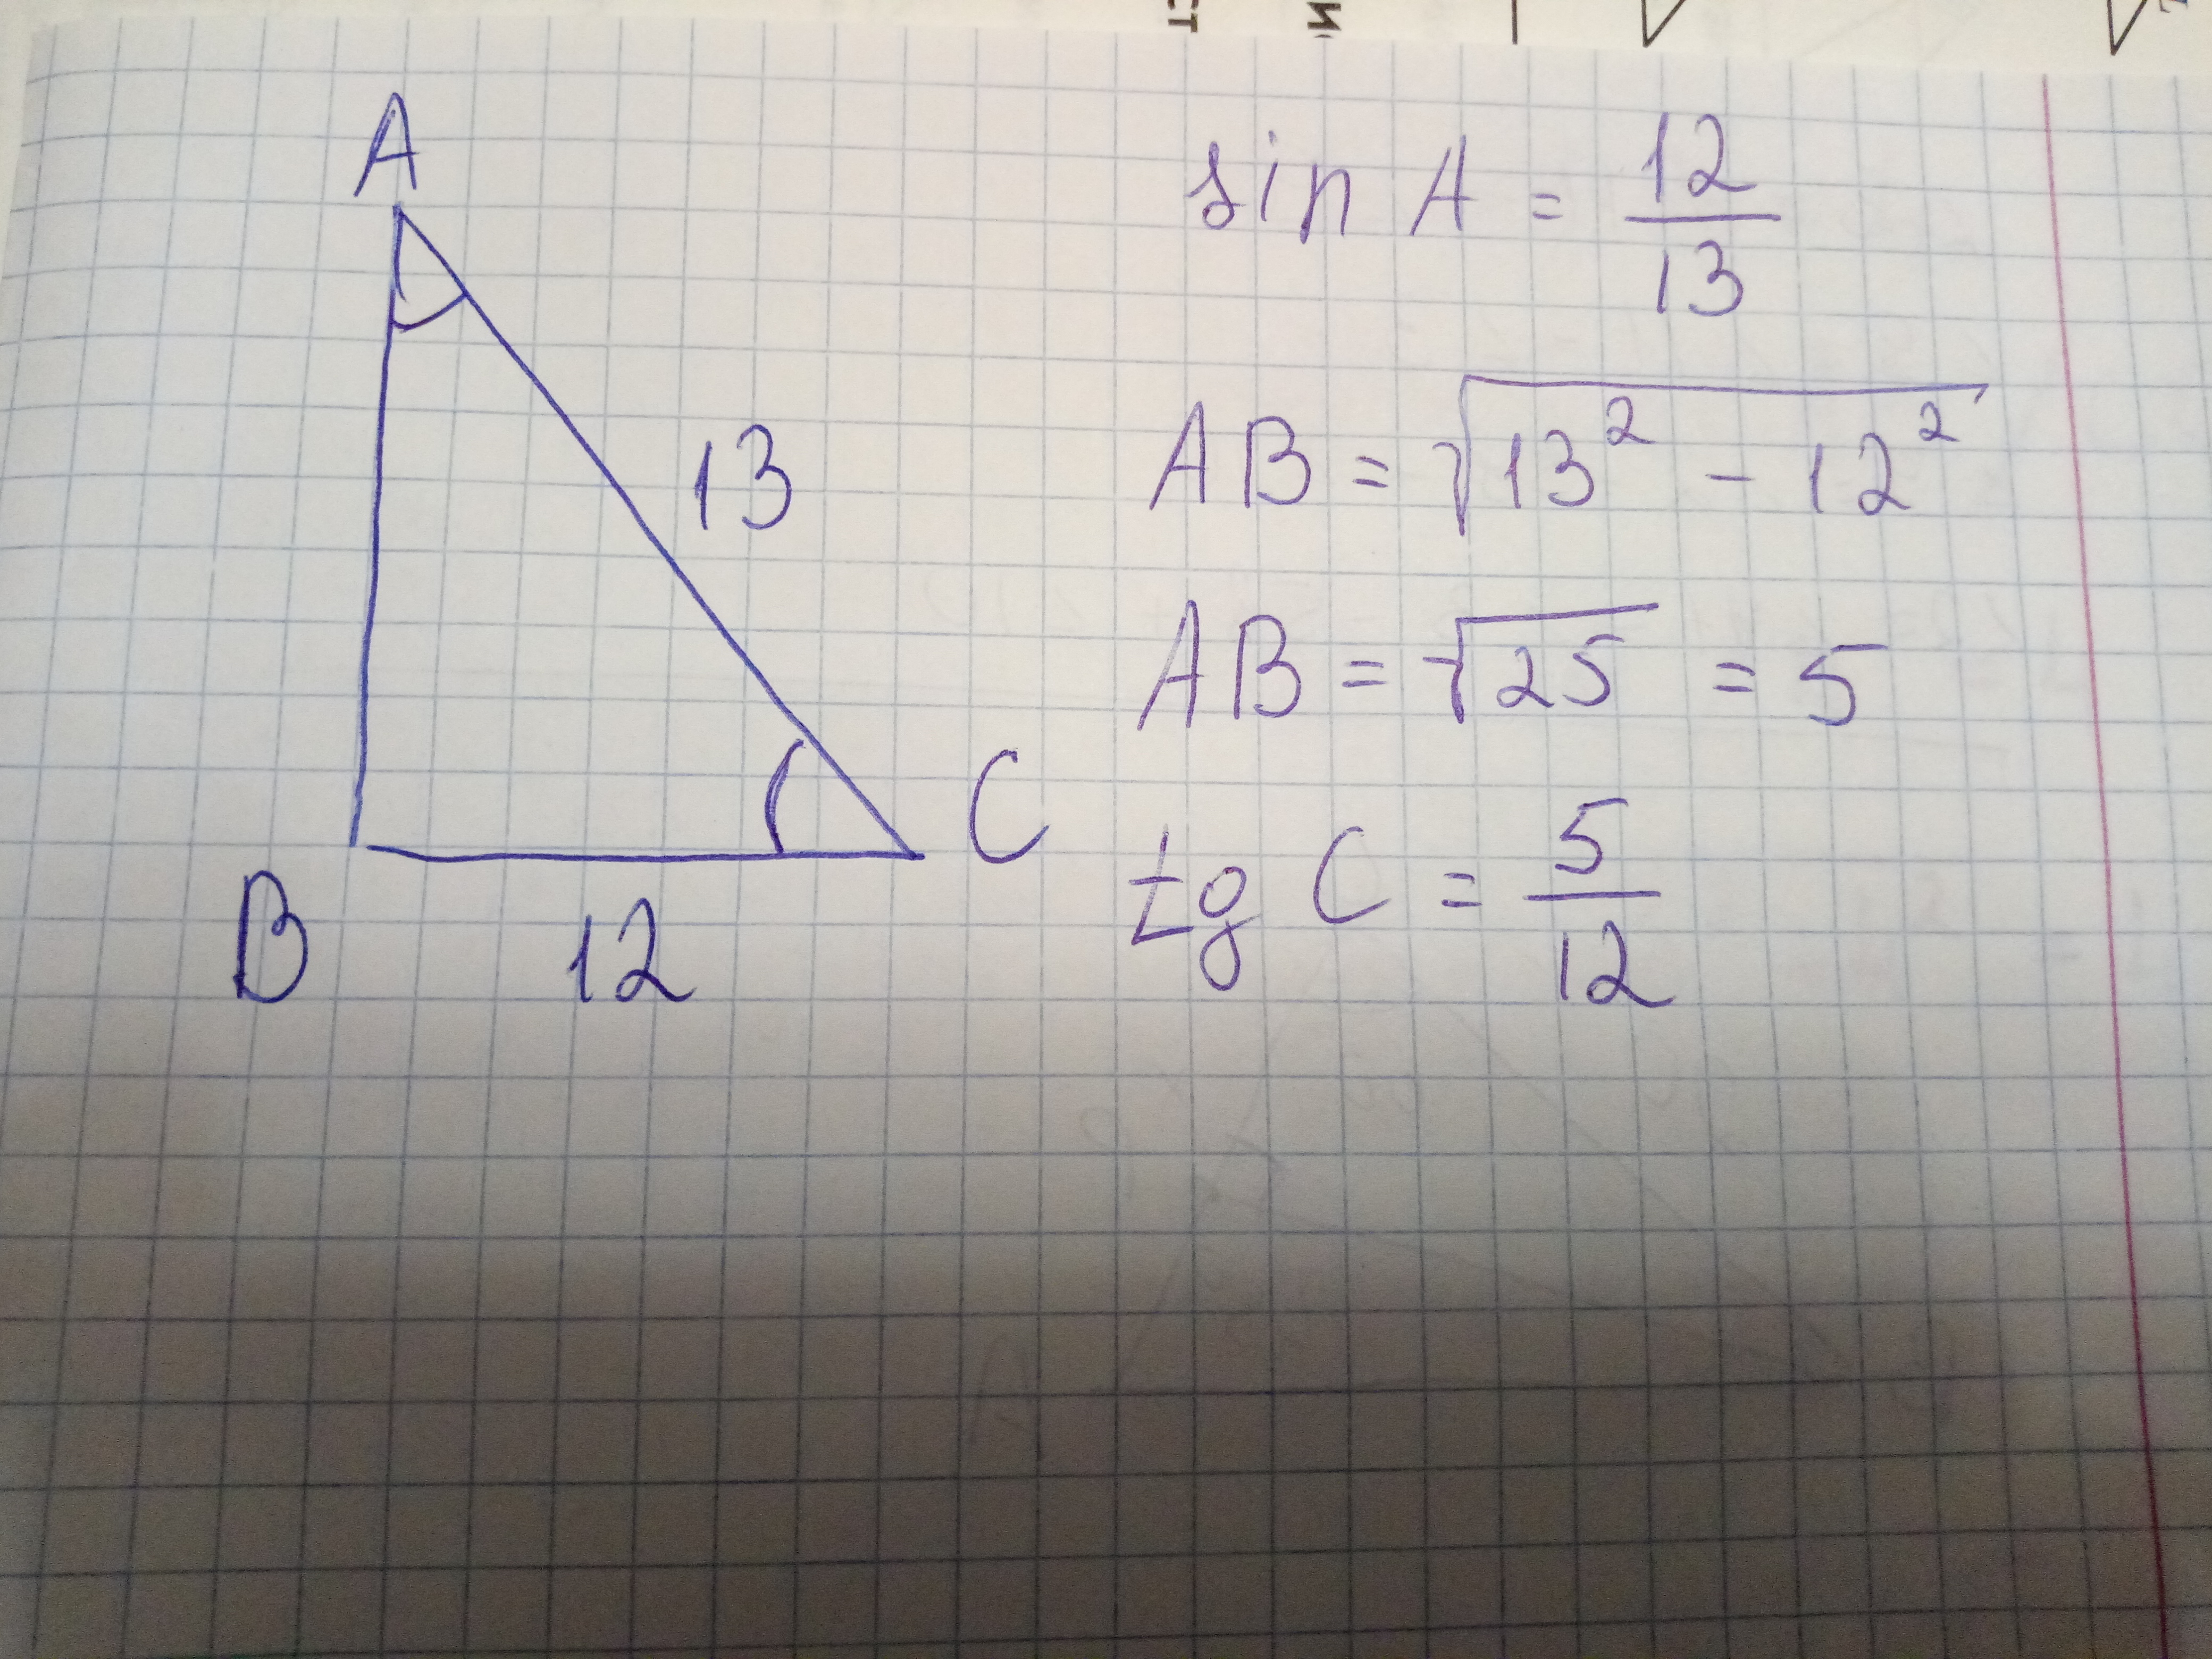 Вс 13 ас 12 найти площадь. Sina в прямоугольном треугольнике. АС=вс = 13. Kac- прямоугольный треугольник , ka=13, AC=12. AC=C*Sina.